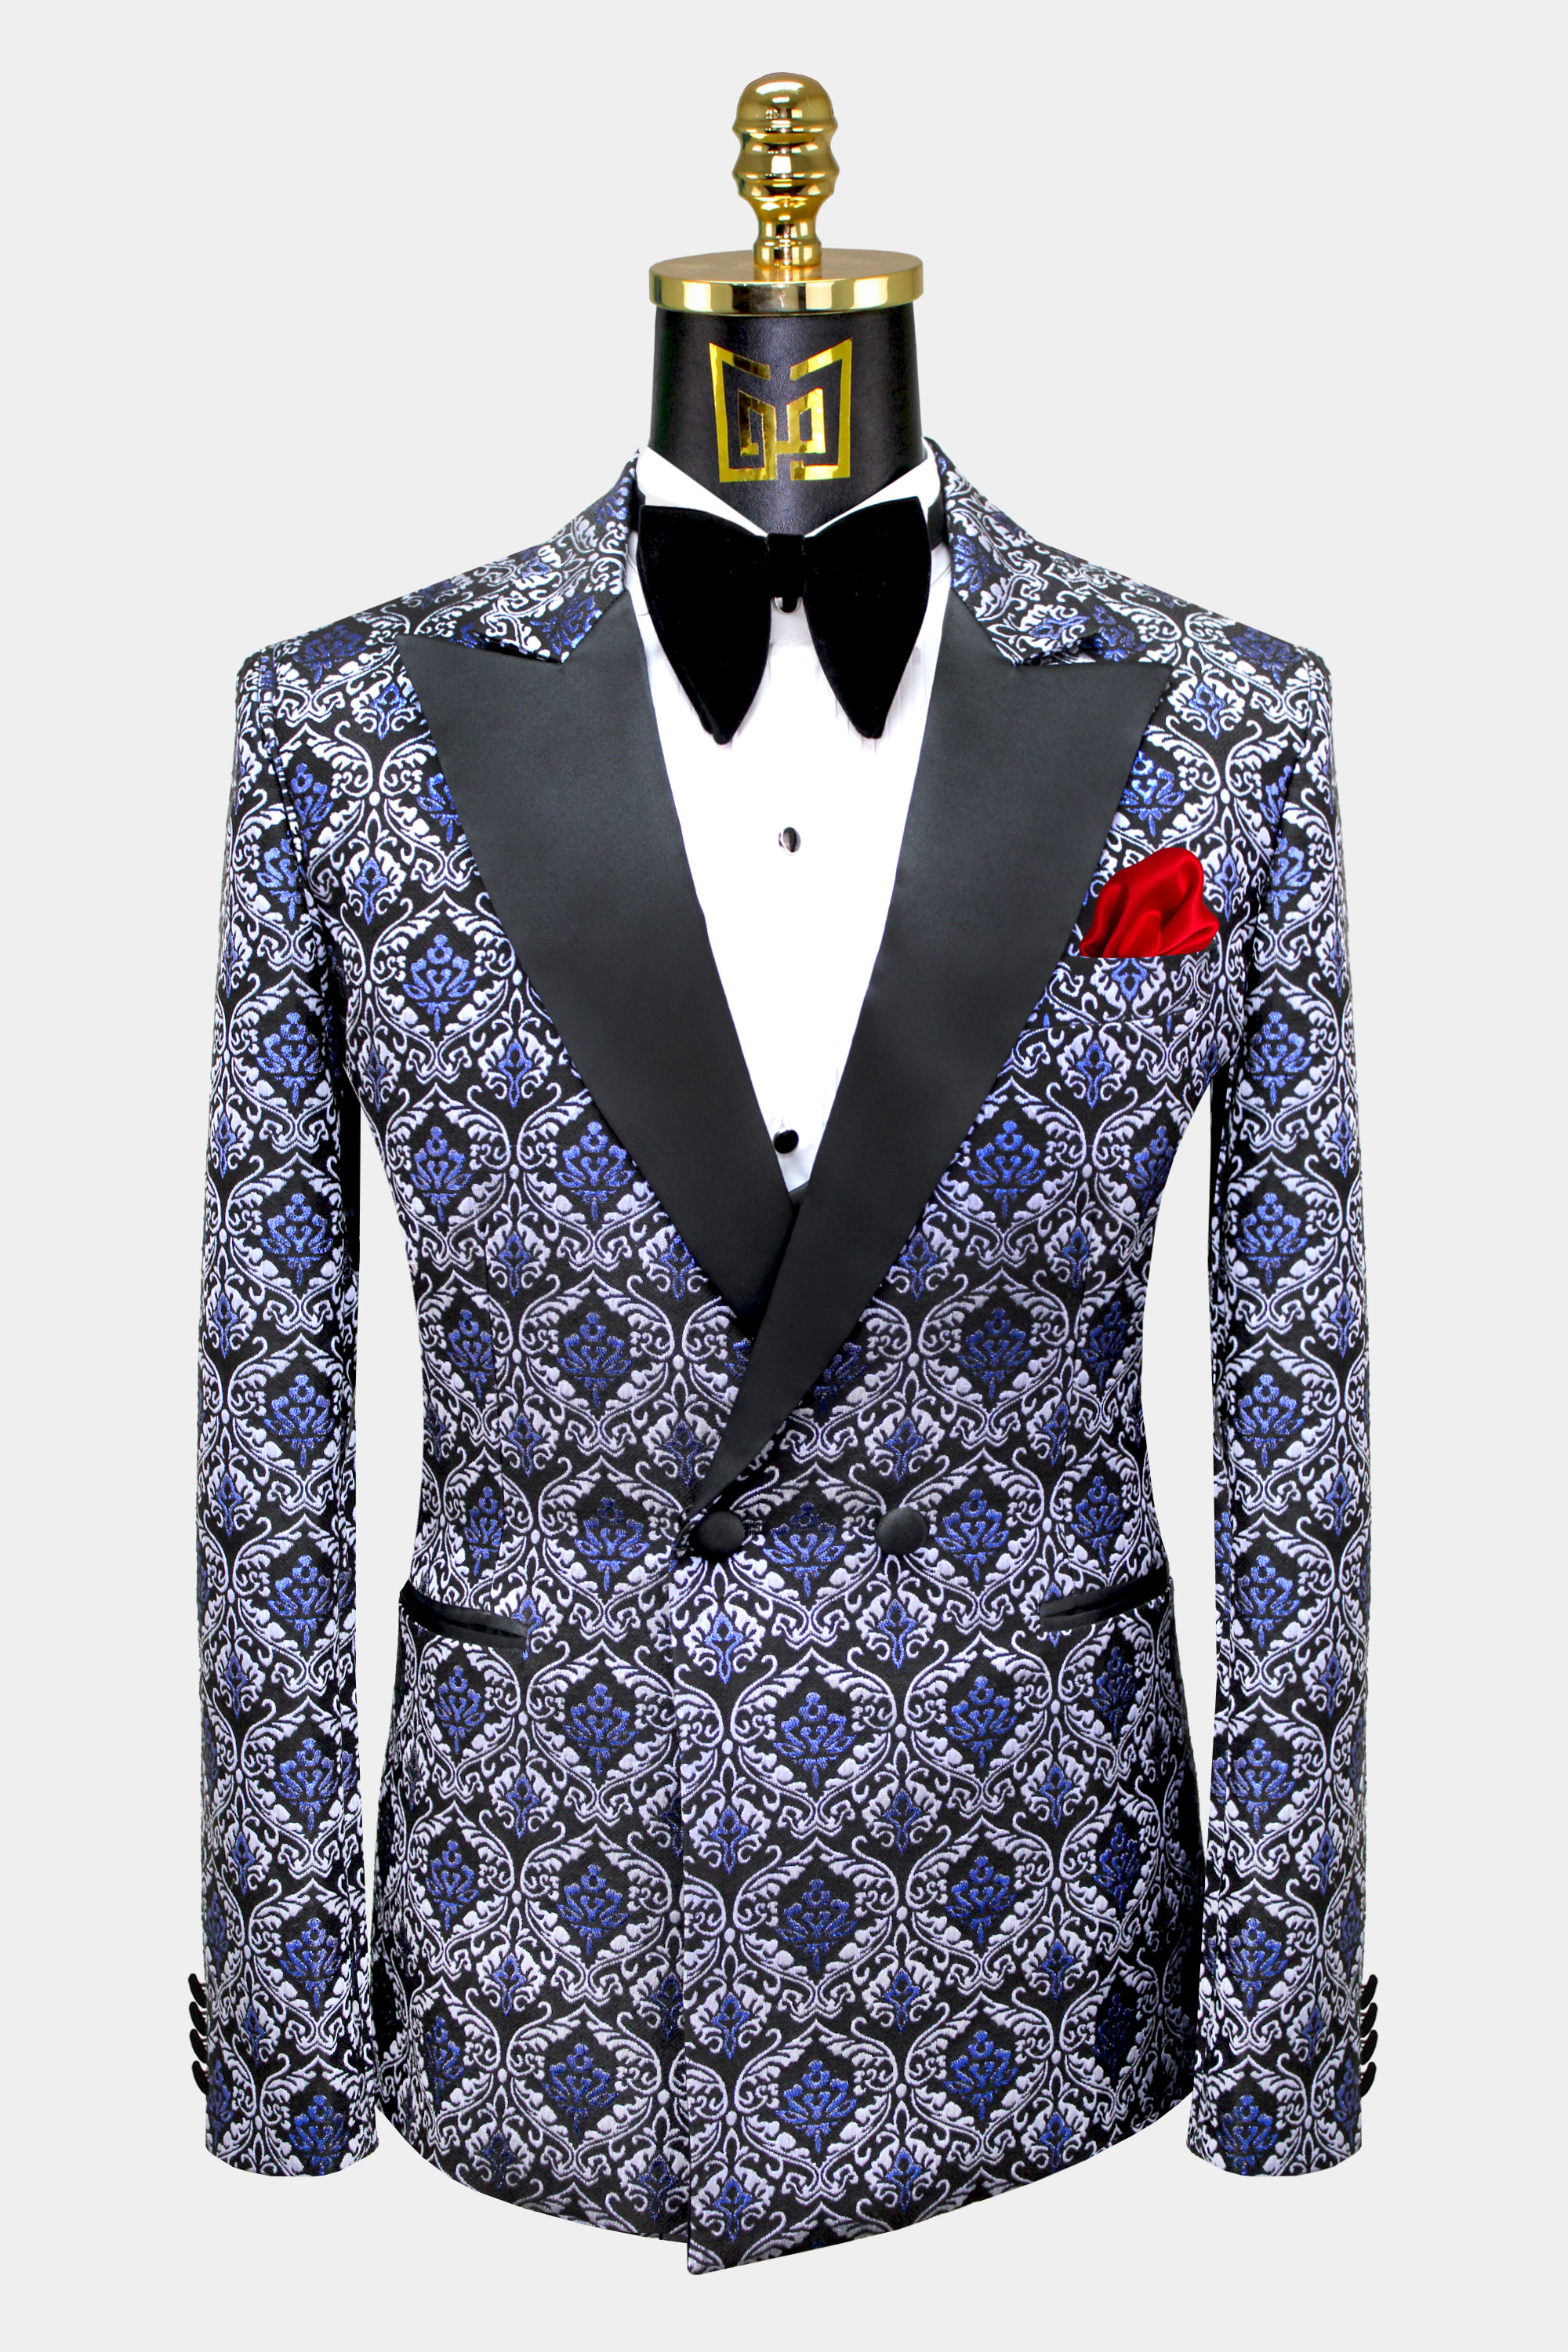 Vintage Blue Tuxedo Suit - 3 Piece | Gentleman's Guru